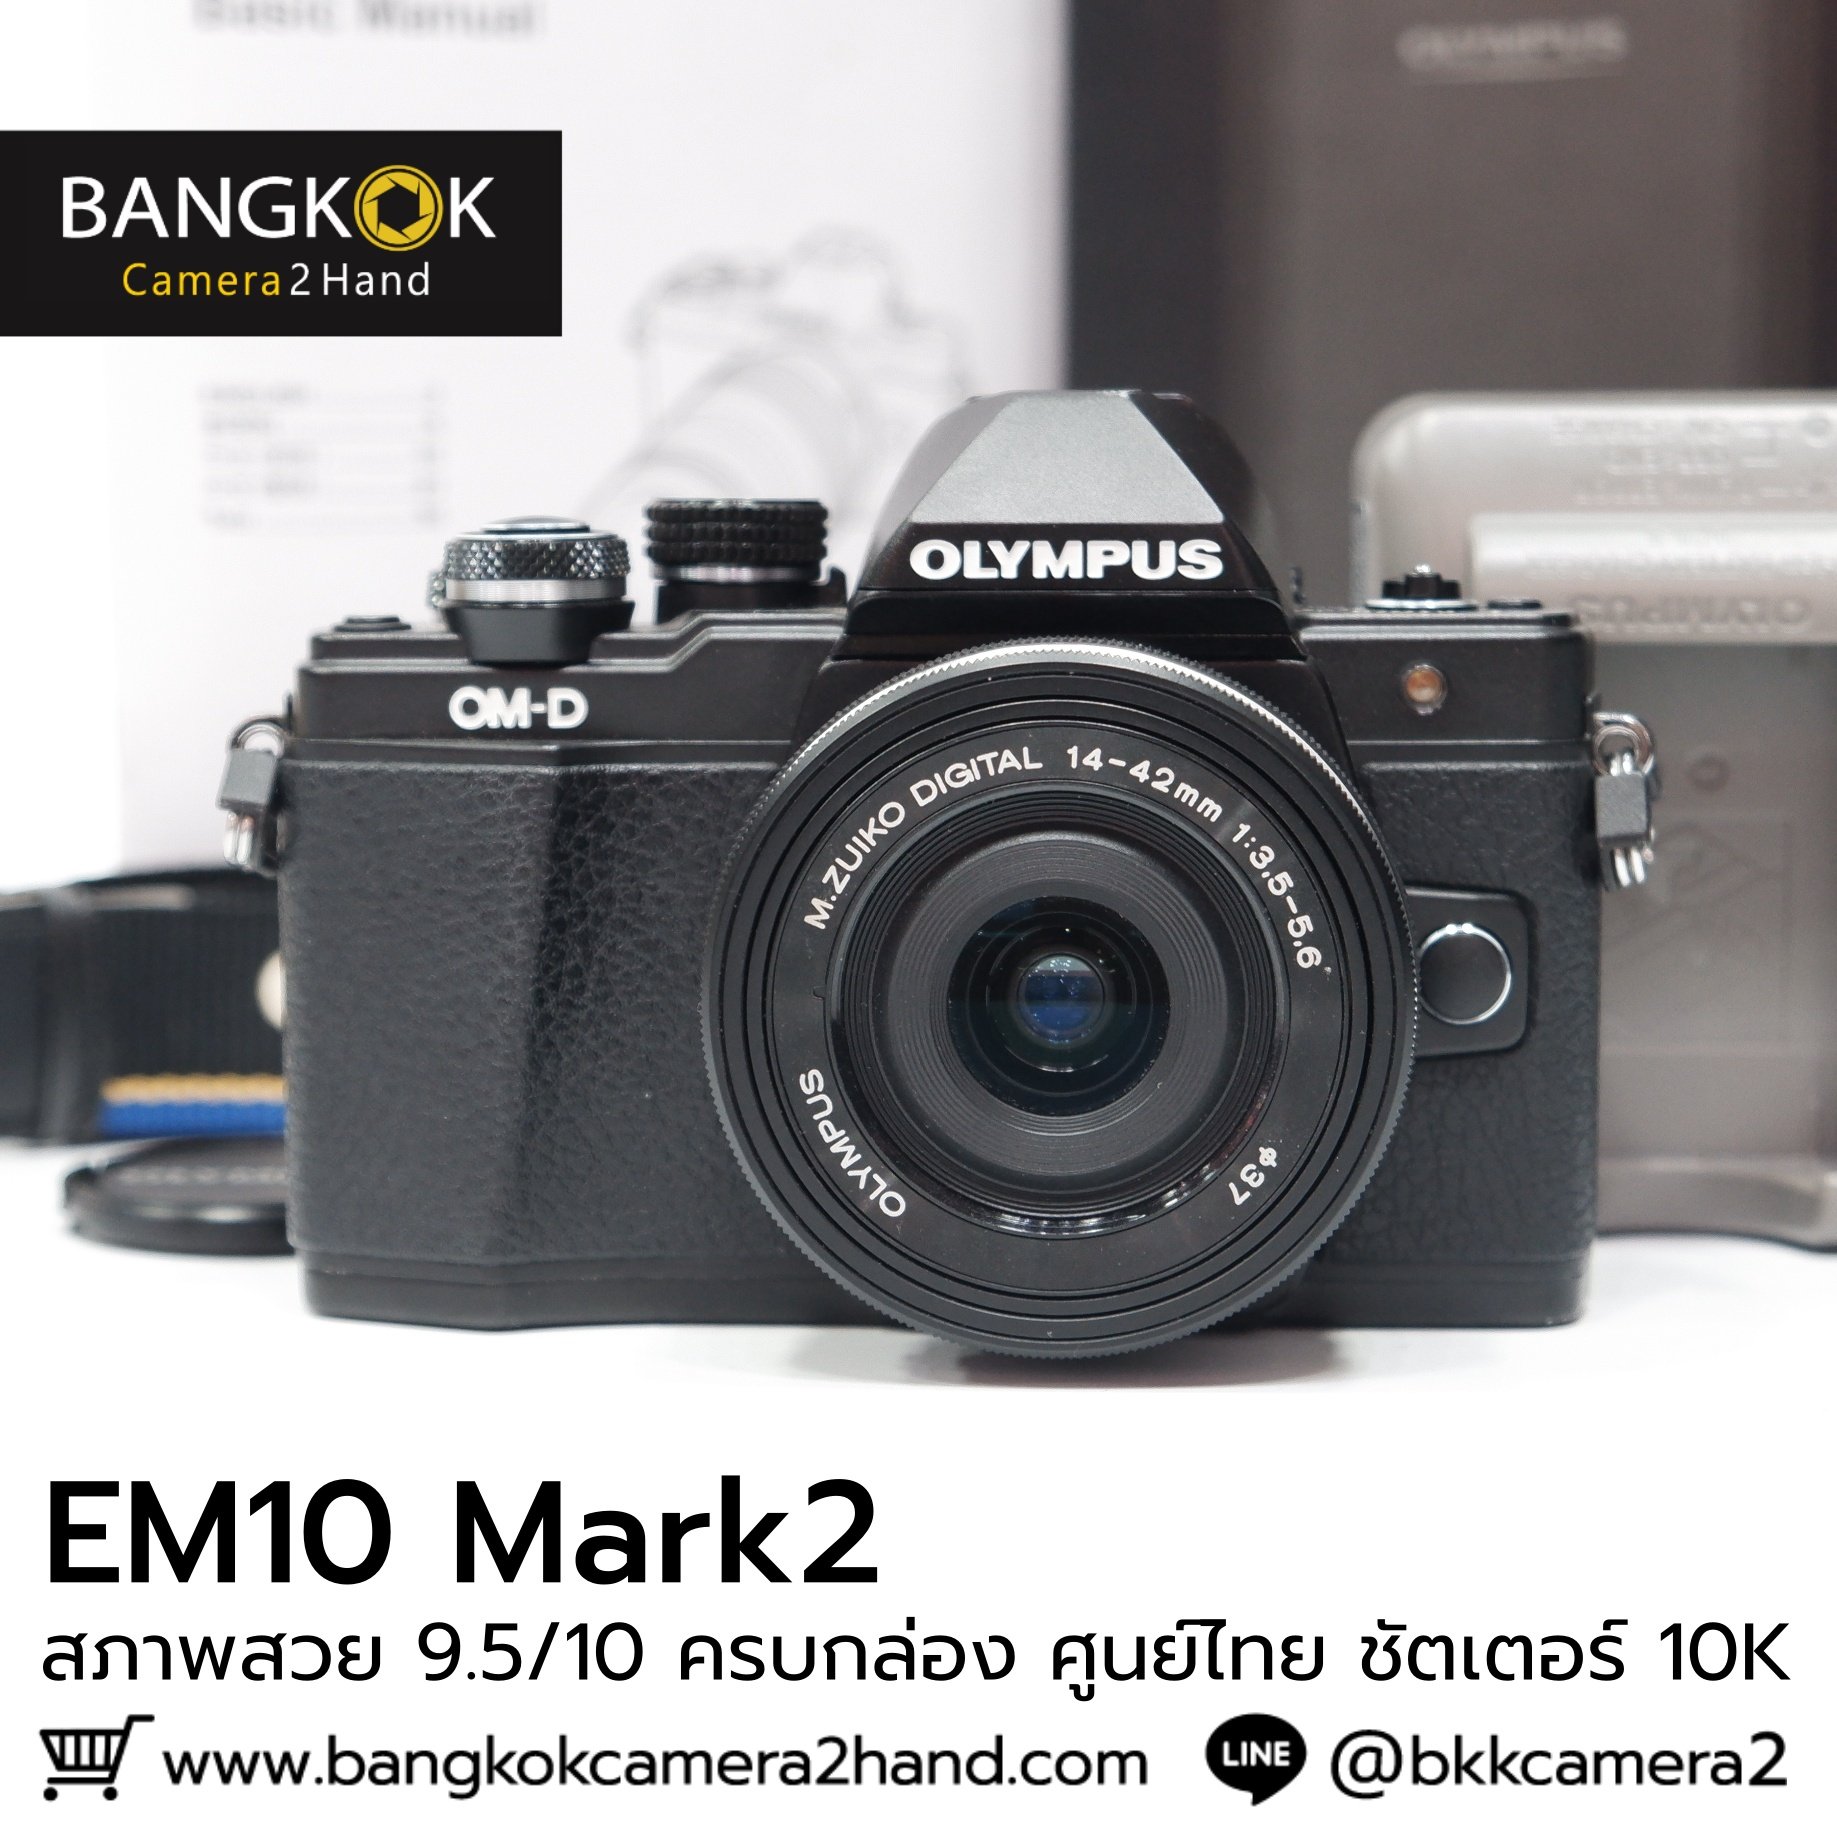 EM10 mark II ครบกล่อง ศูนย์ไทย